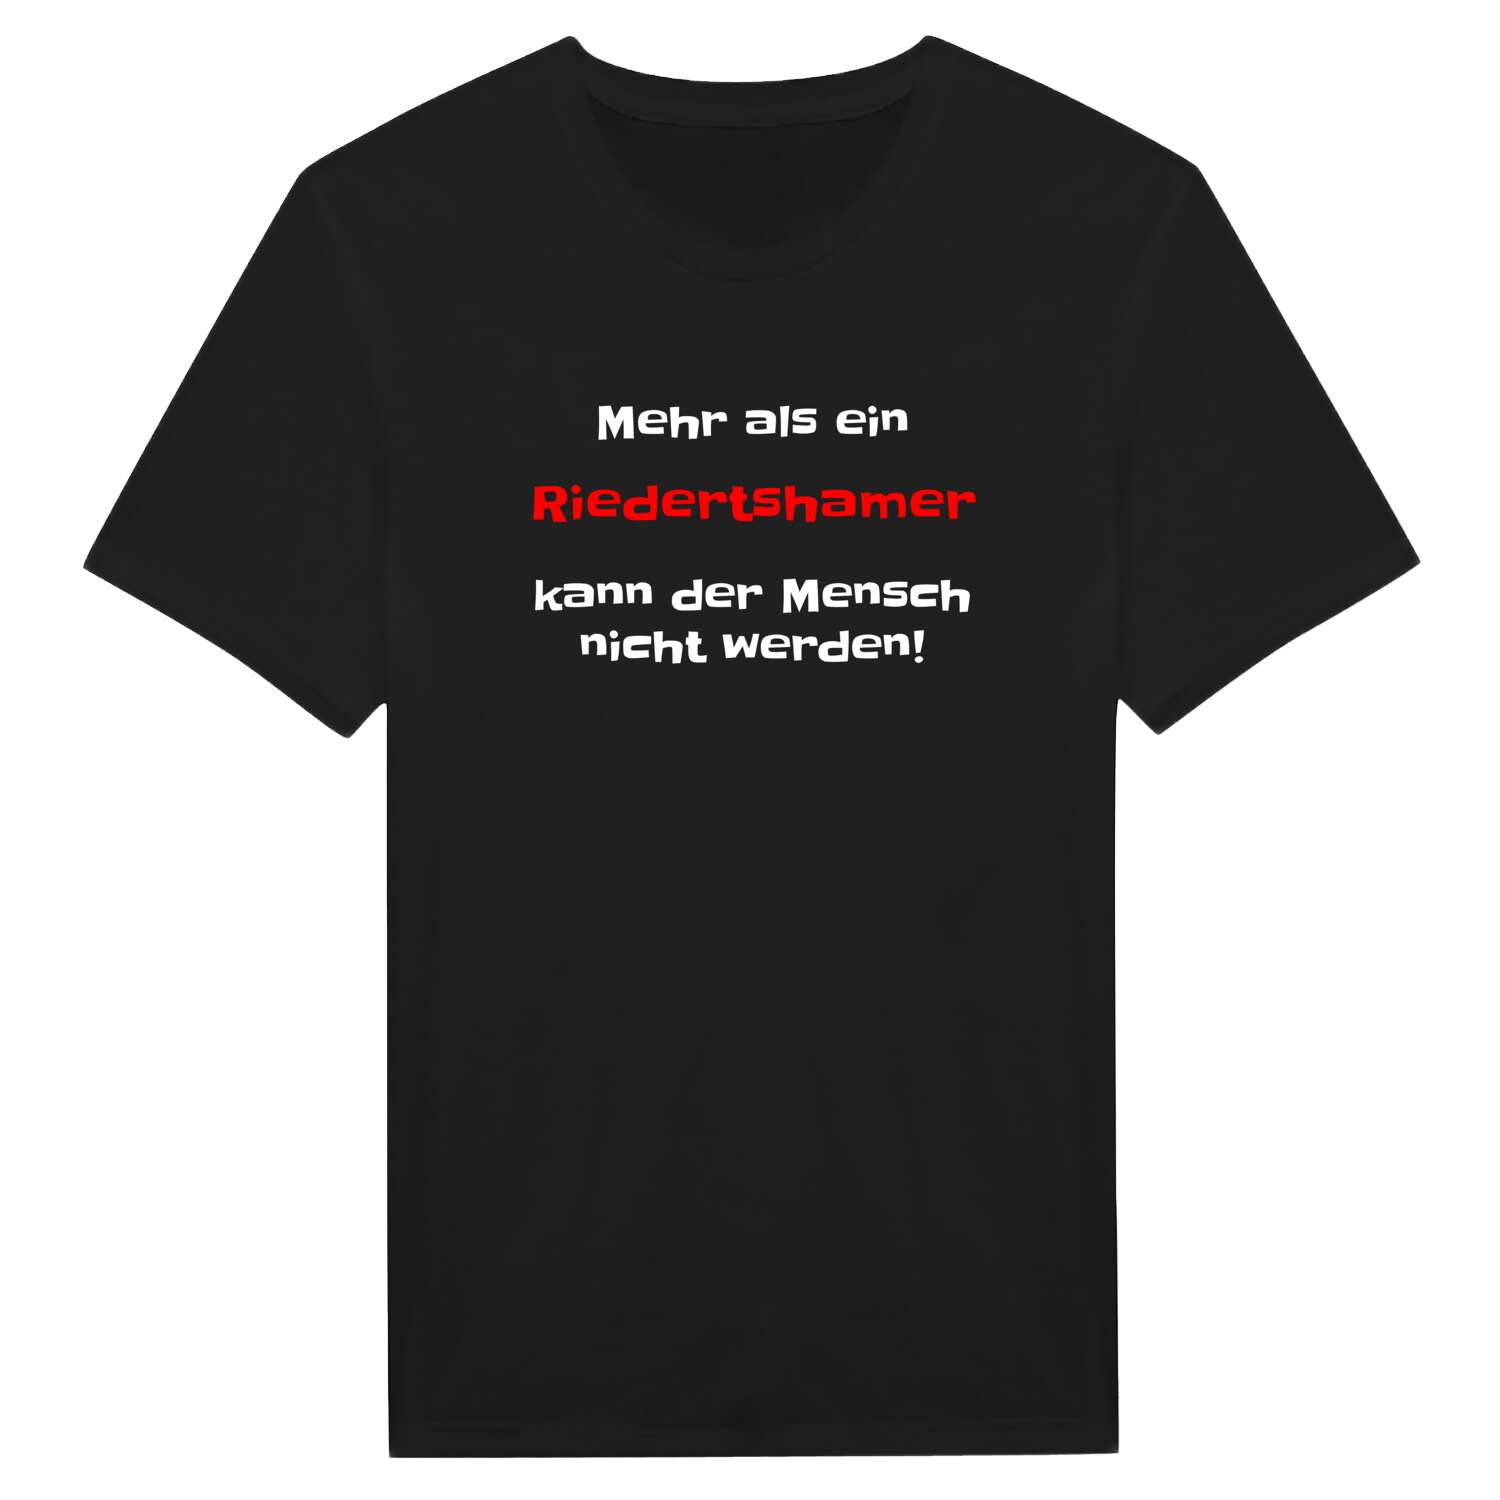 Riedertsham T-Shirt »Mehr als ein«